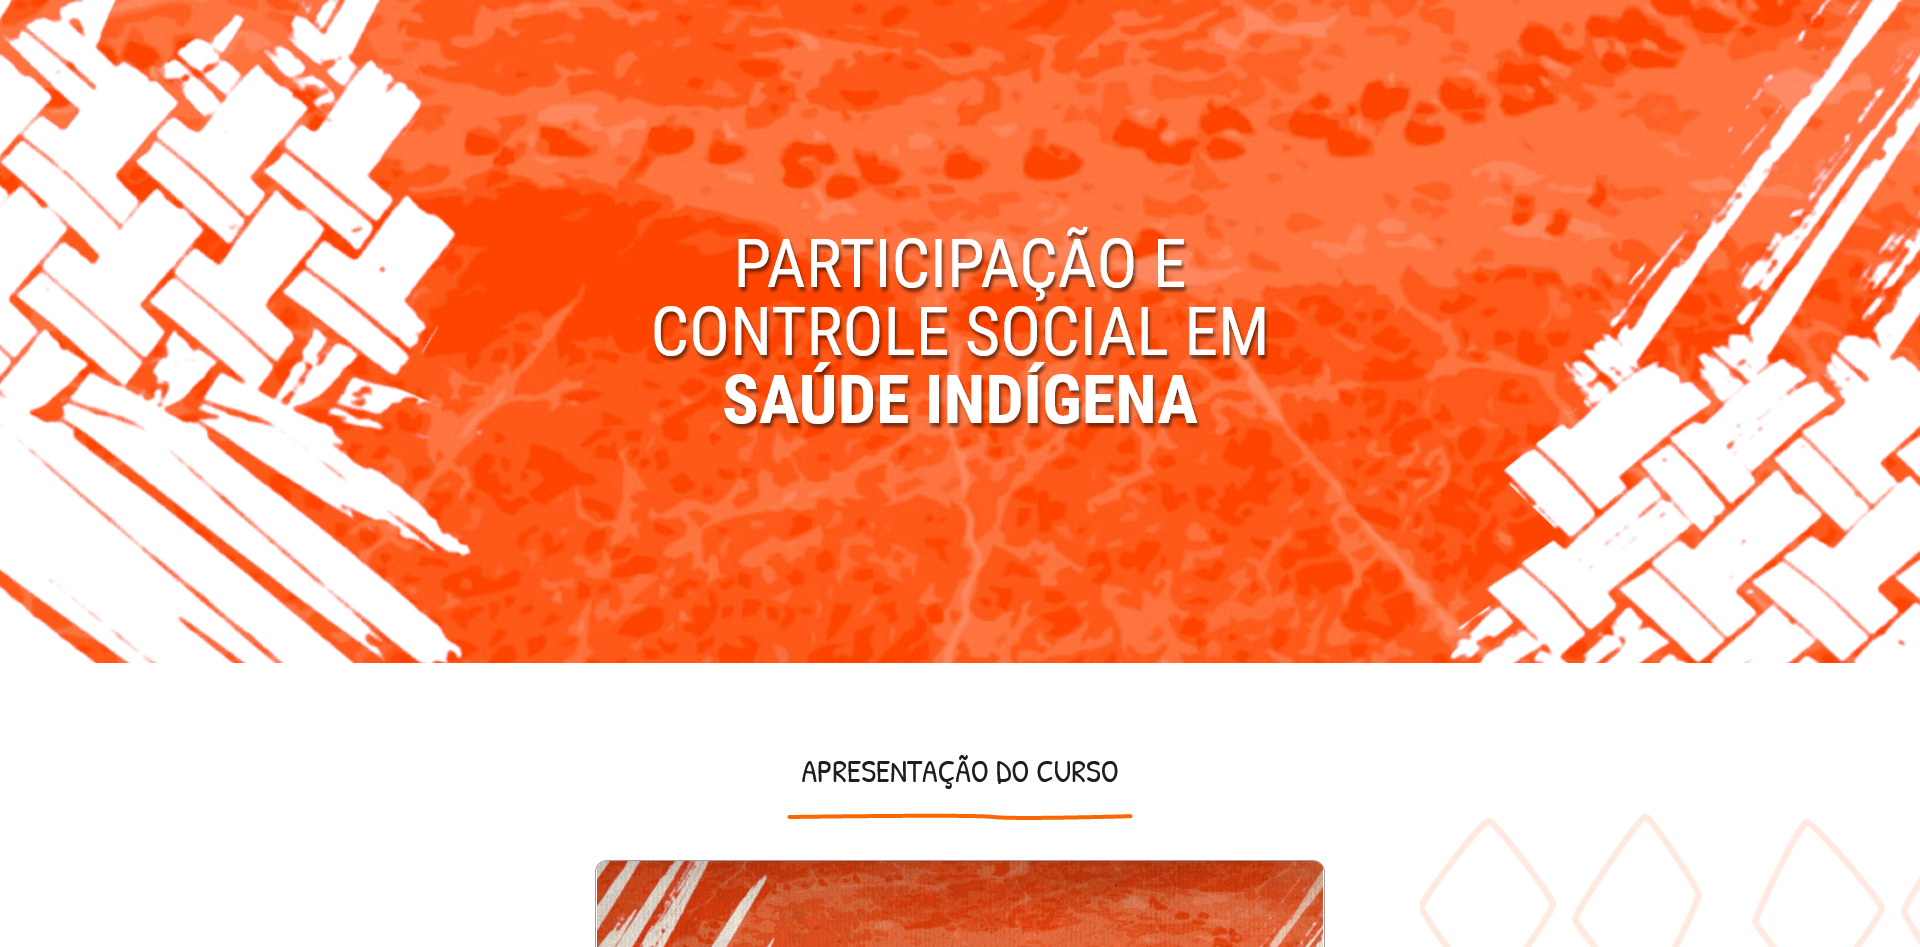 Participação e Controle Social em Saúde Indígena